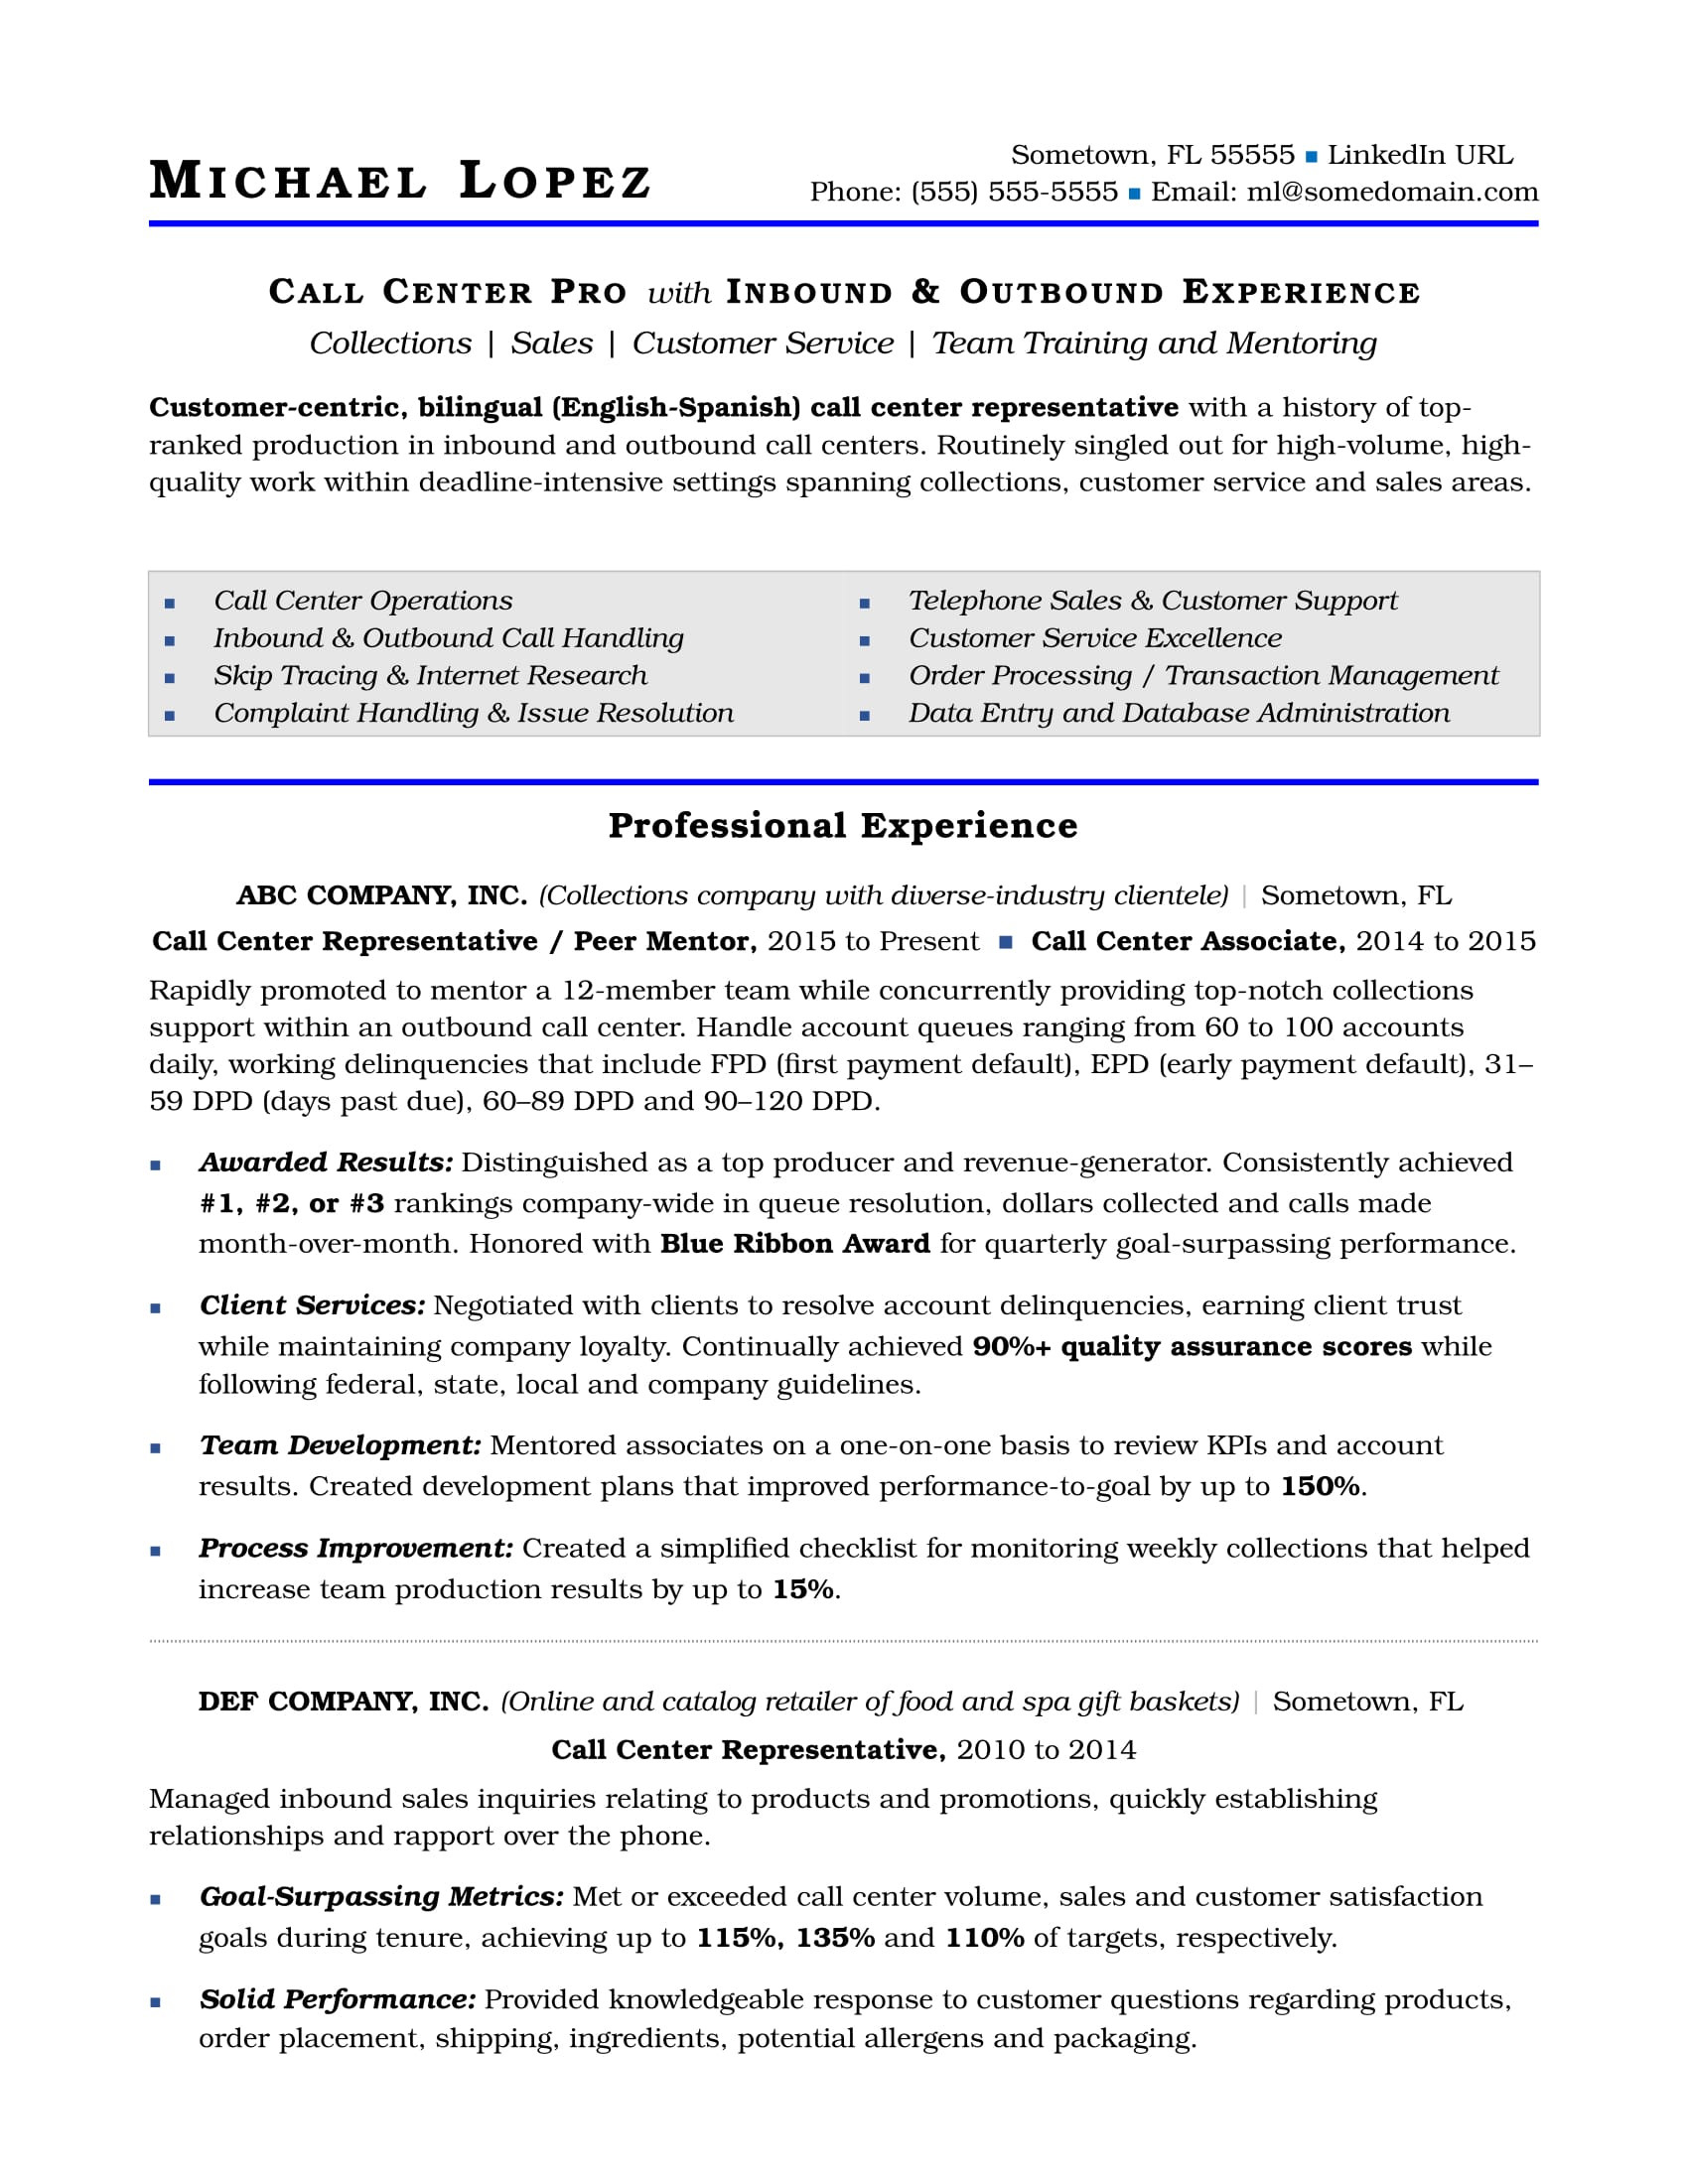 Entry Level Call Center Resume Sample Call Center Resume Sample Monster.com